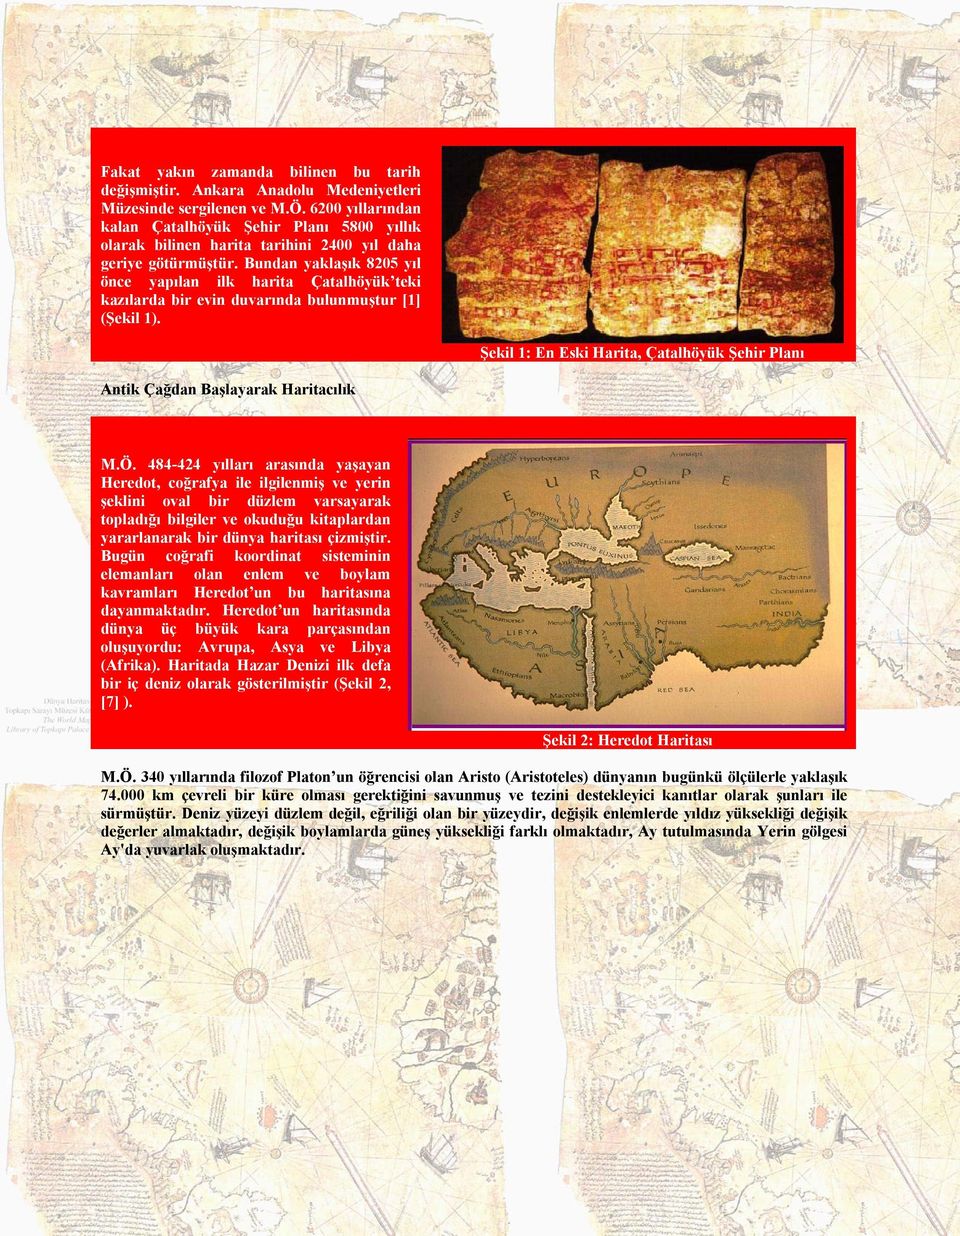 Bundan yaklaşık 8205 yıl önce yapılan ilk harita Çatalhöyük teki kazılarda bir evin duvarında bulunmuştur [1] (Şekil 1).